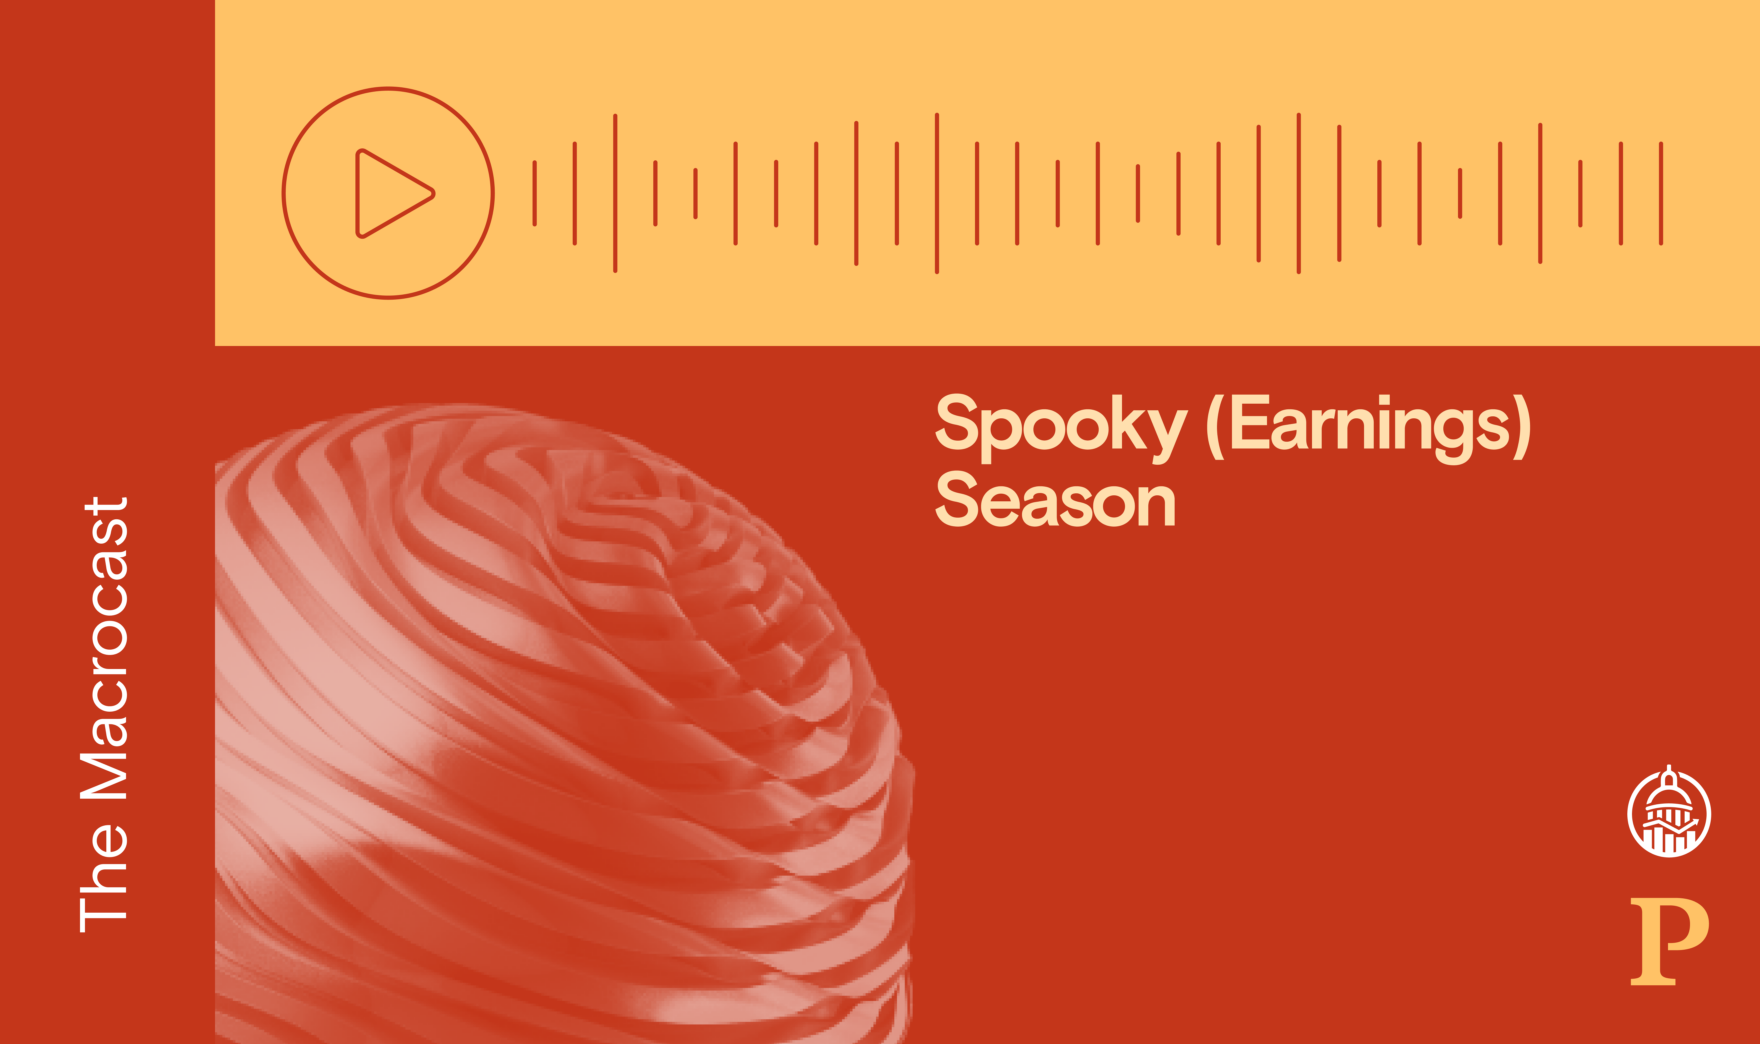 Macrocast: Spooky (Earnings) Season